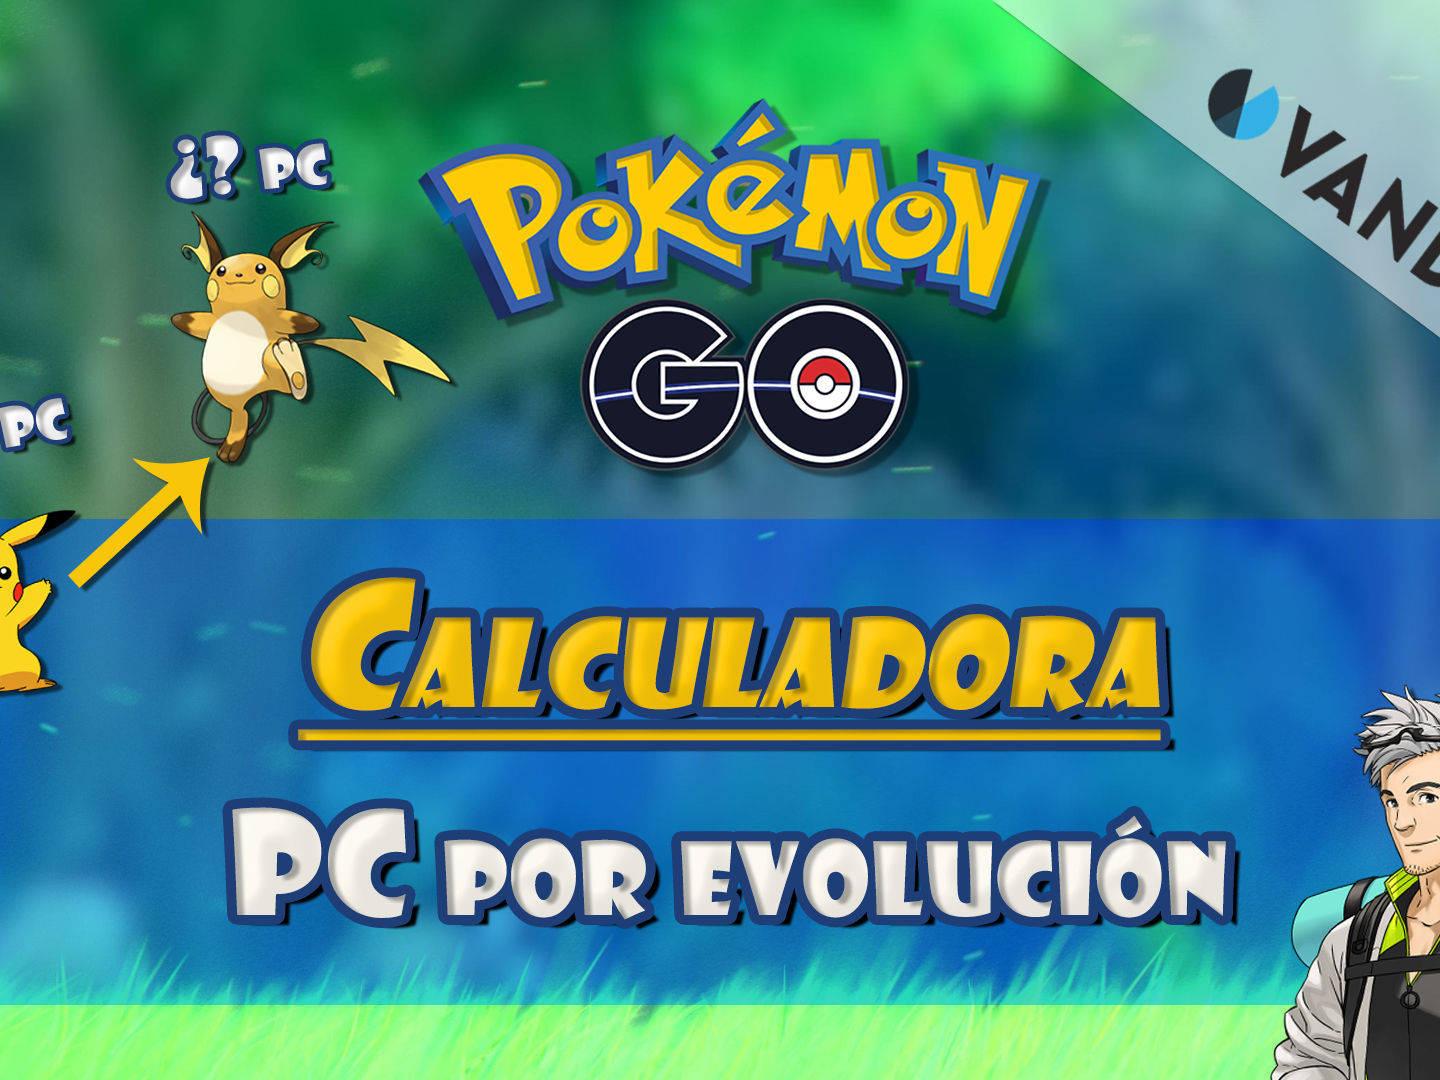 emocionante Comparable venganza 🥇Calculadora evolución PC - Pokémon Go (ACTUALIZADA 6ª GEN)